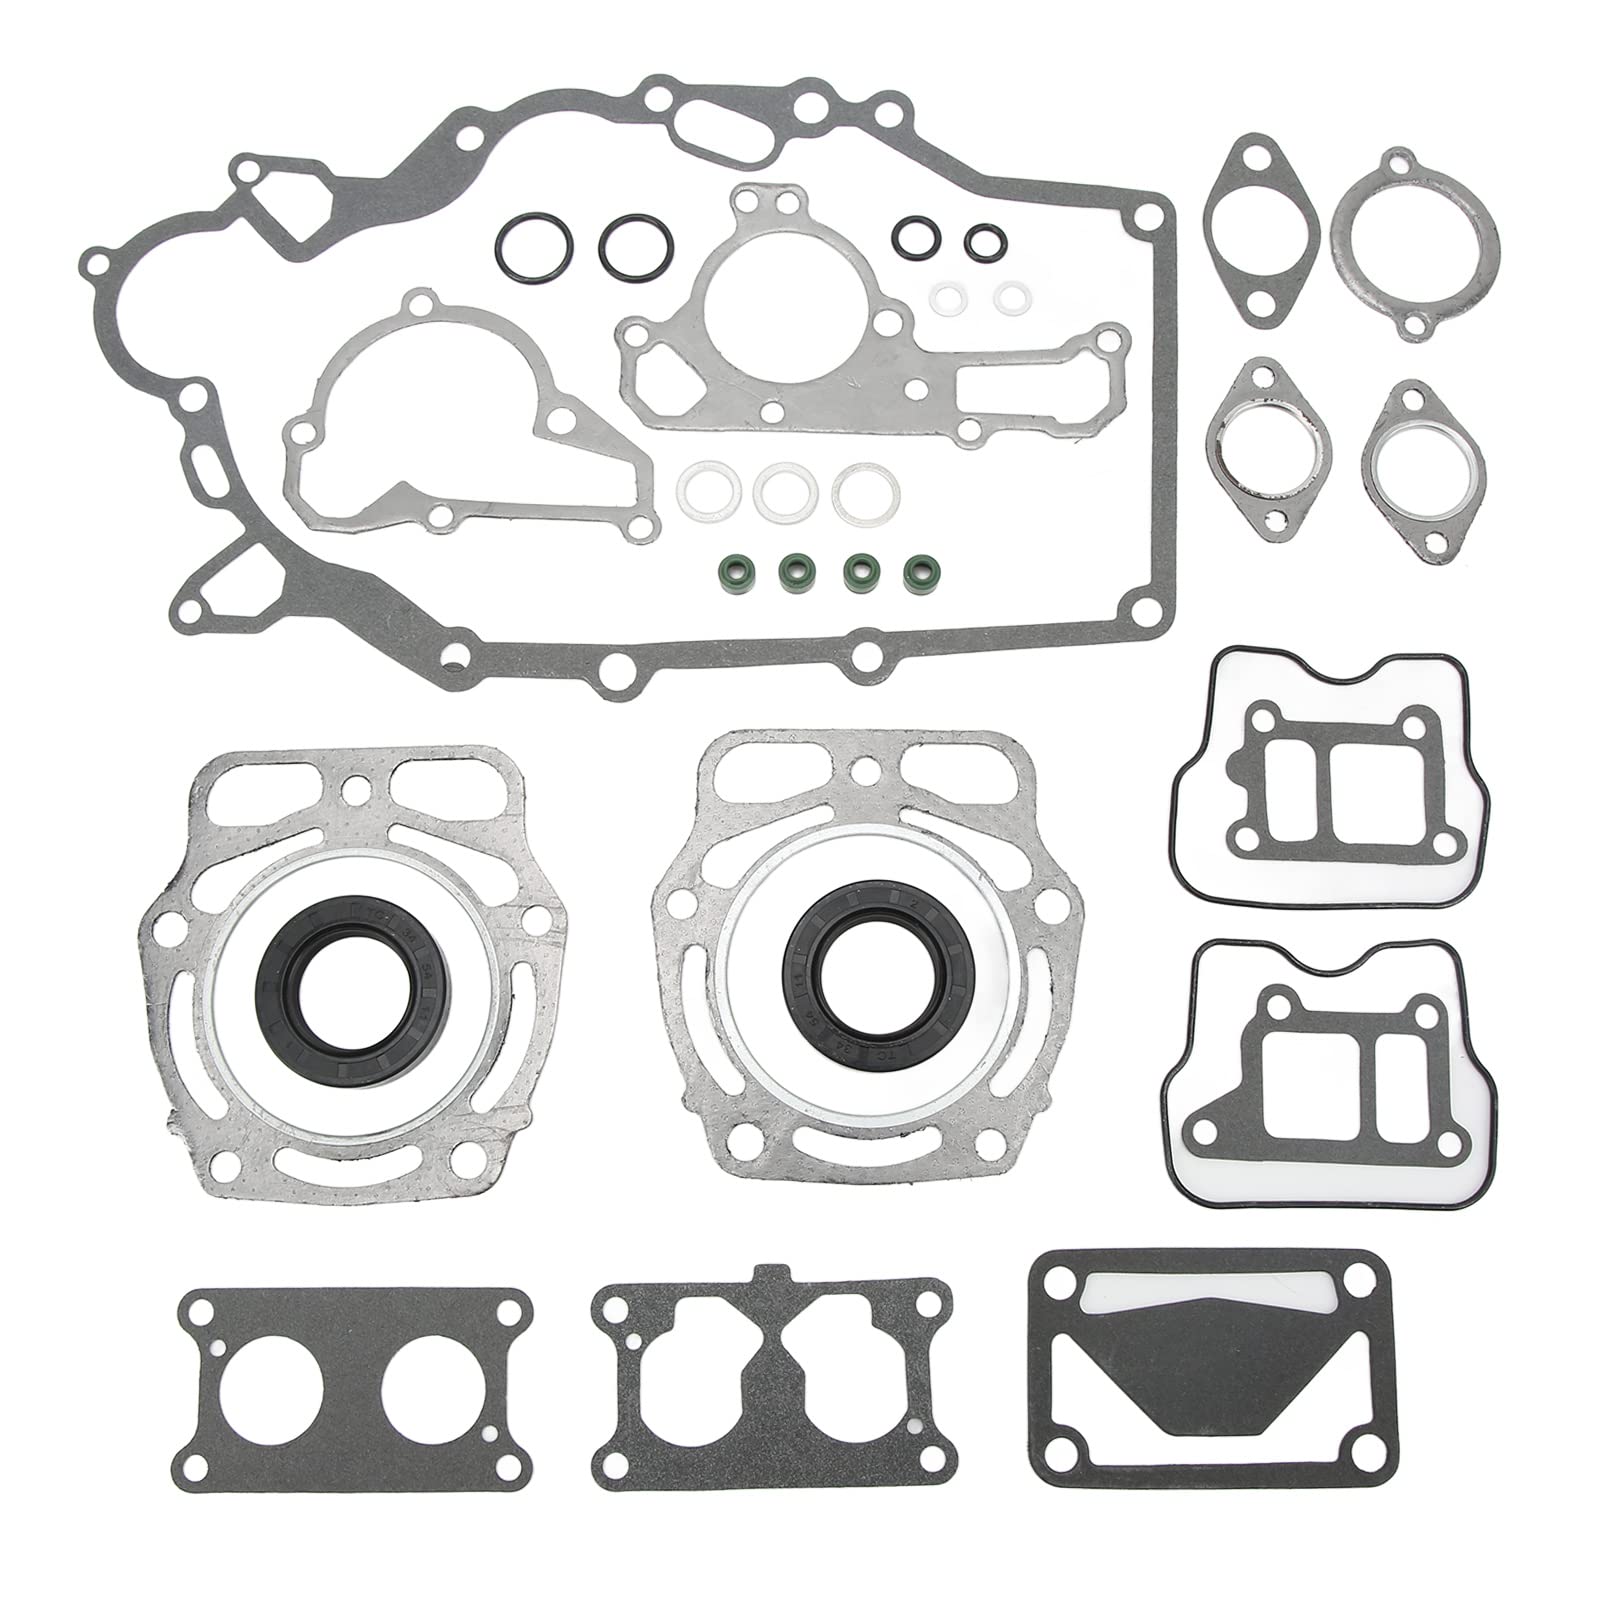 Motordichtungssatz, Zylinderkopfdichtungssatz, Austausch der Motordichtung, Kompatibel mit Mule 2500 (KAF620-C) 2510 4x4 (KAF620-A) 1994-2000 von Aramox